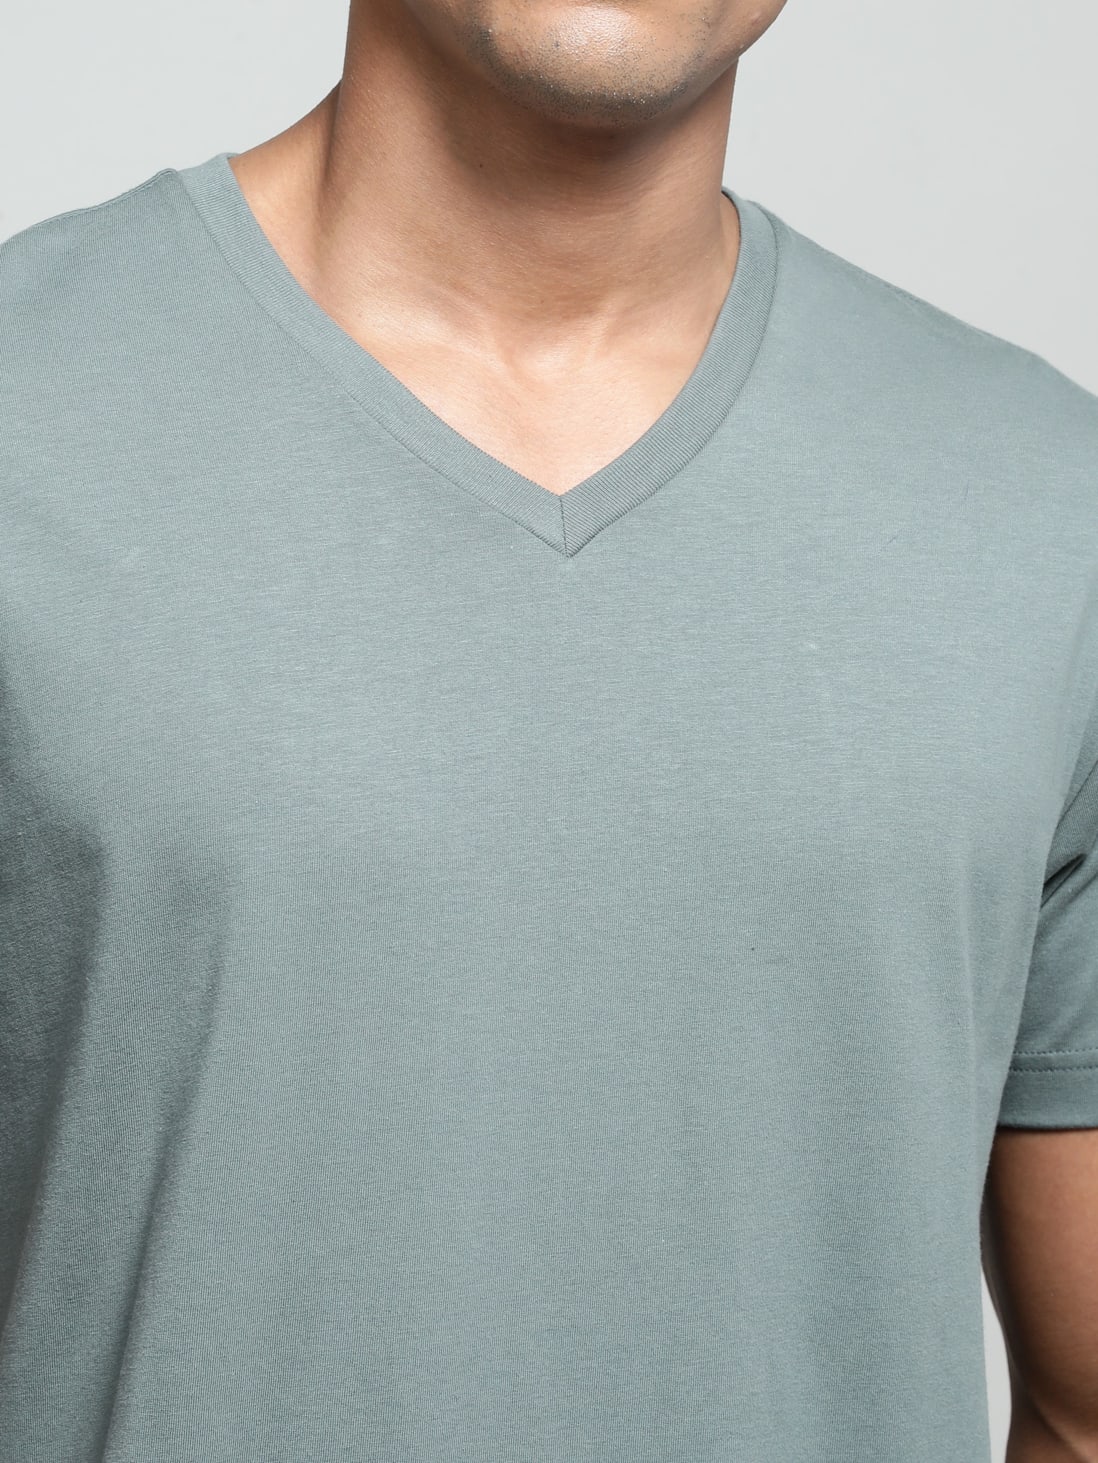 Buy Mens Super Combed Cotton Rich Solid V Neck Half Sleeve T Shirt Balsam Green 2726 Jockey